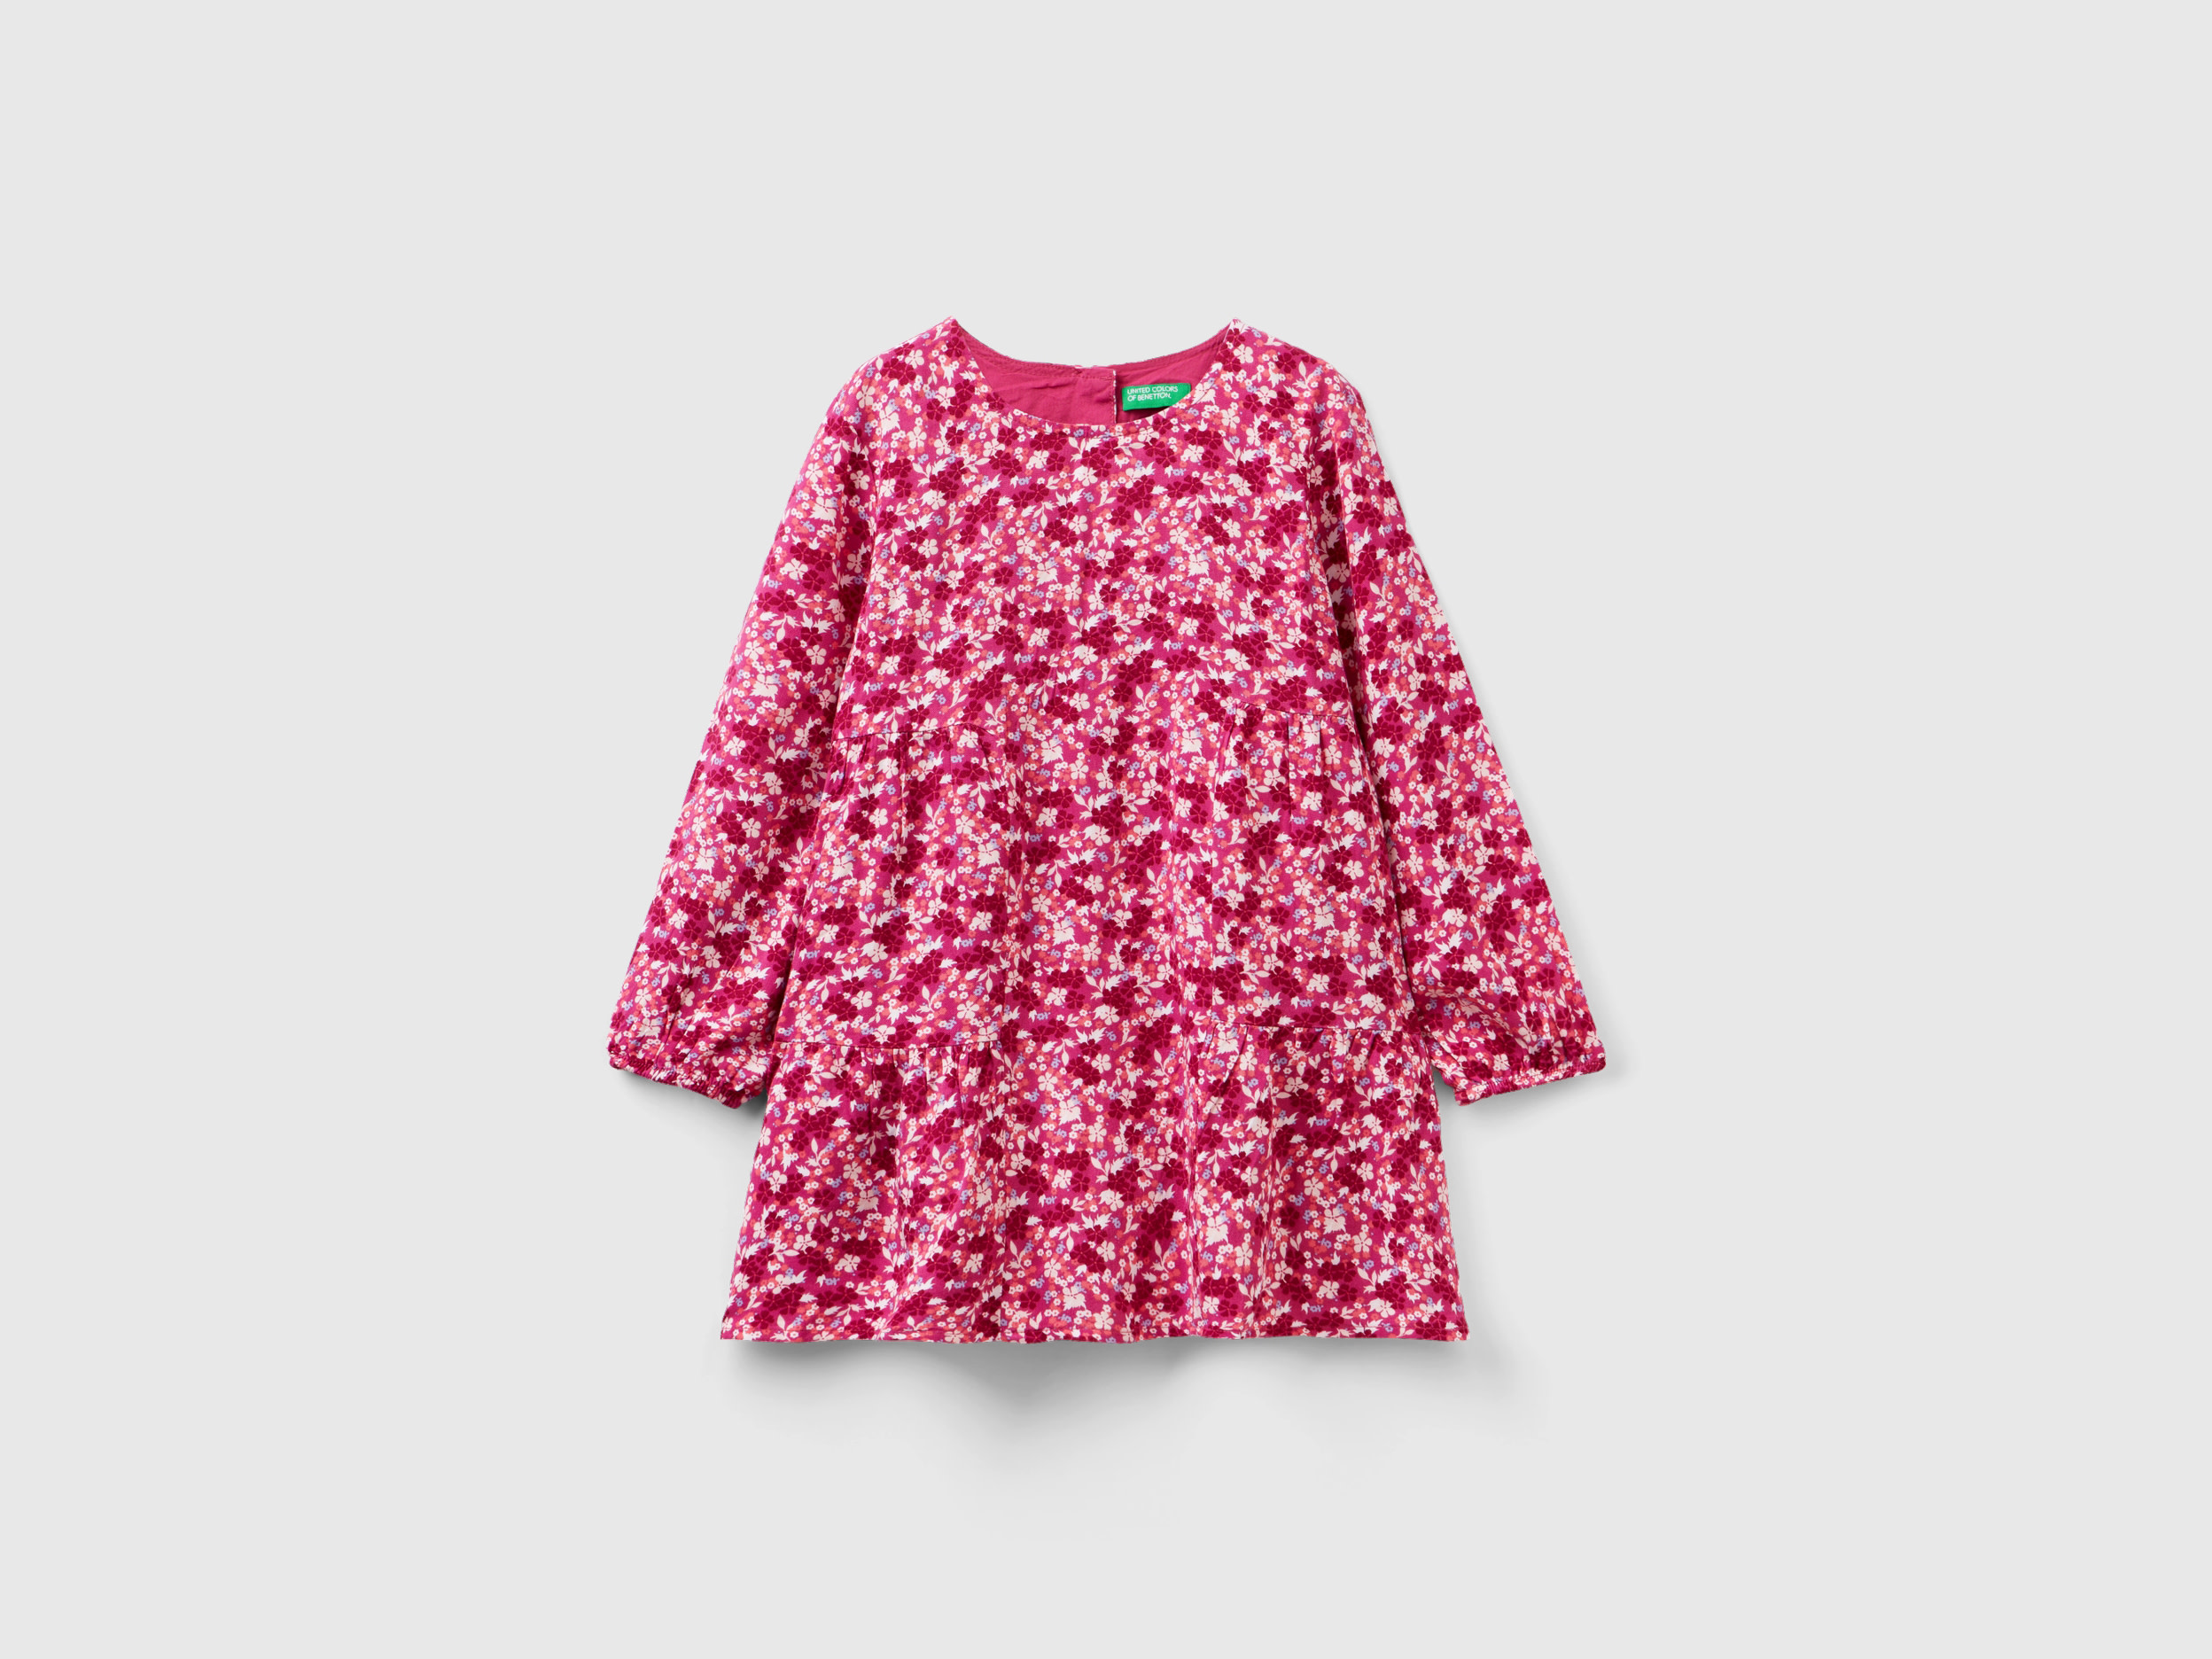 Benetton, Flowy Floral Dress, size 12-18, Multi-color, Kids